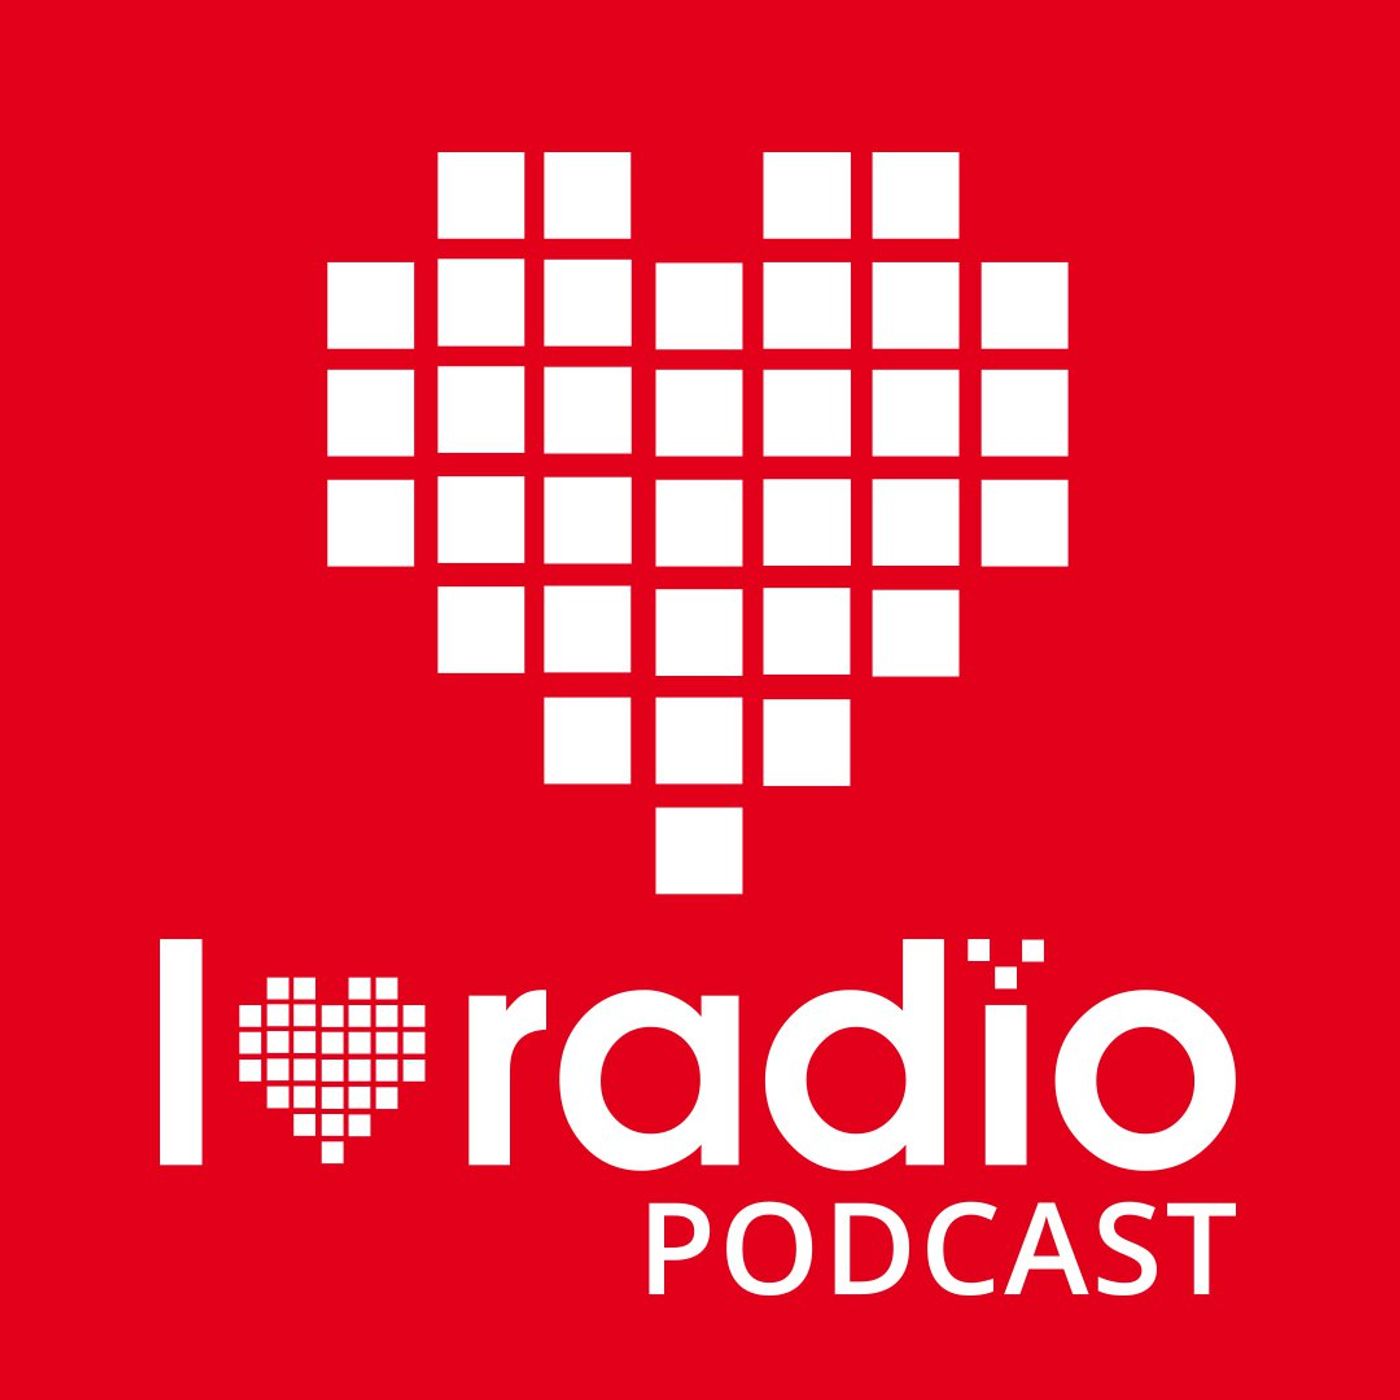 ILR13 - Prasówka I Love Radio - 04.2021 - wydarzenia na rynku radiowym w kwietniu 2021